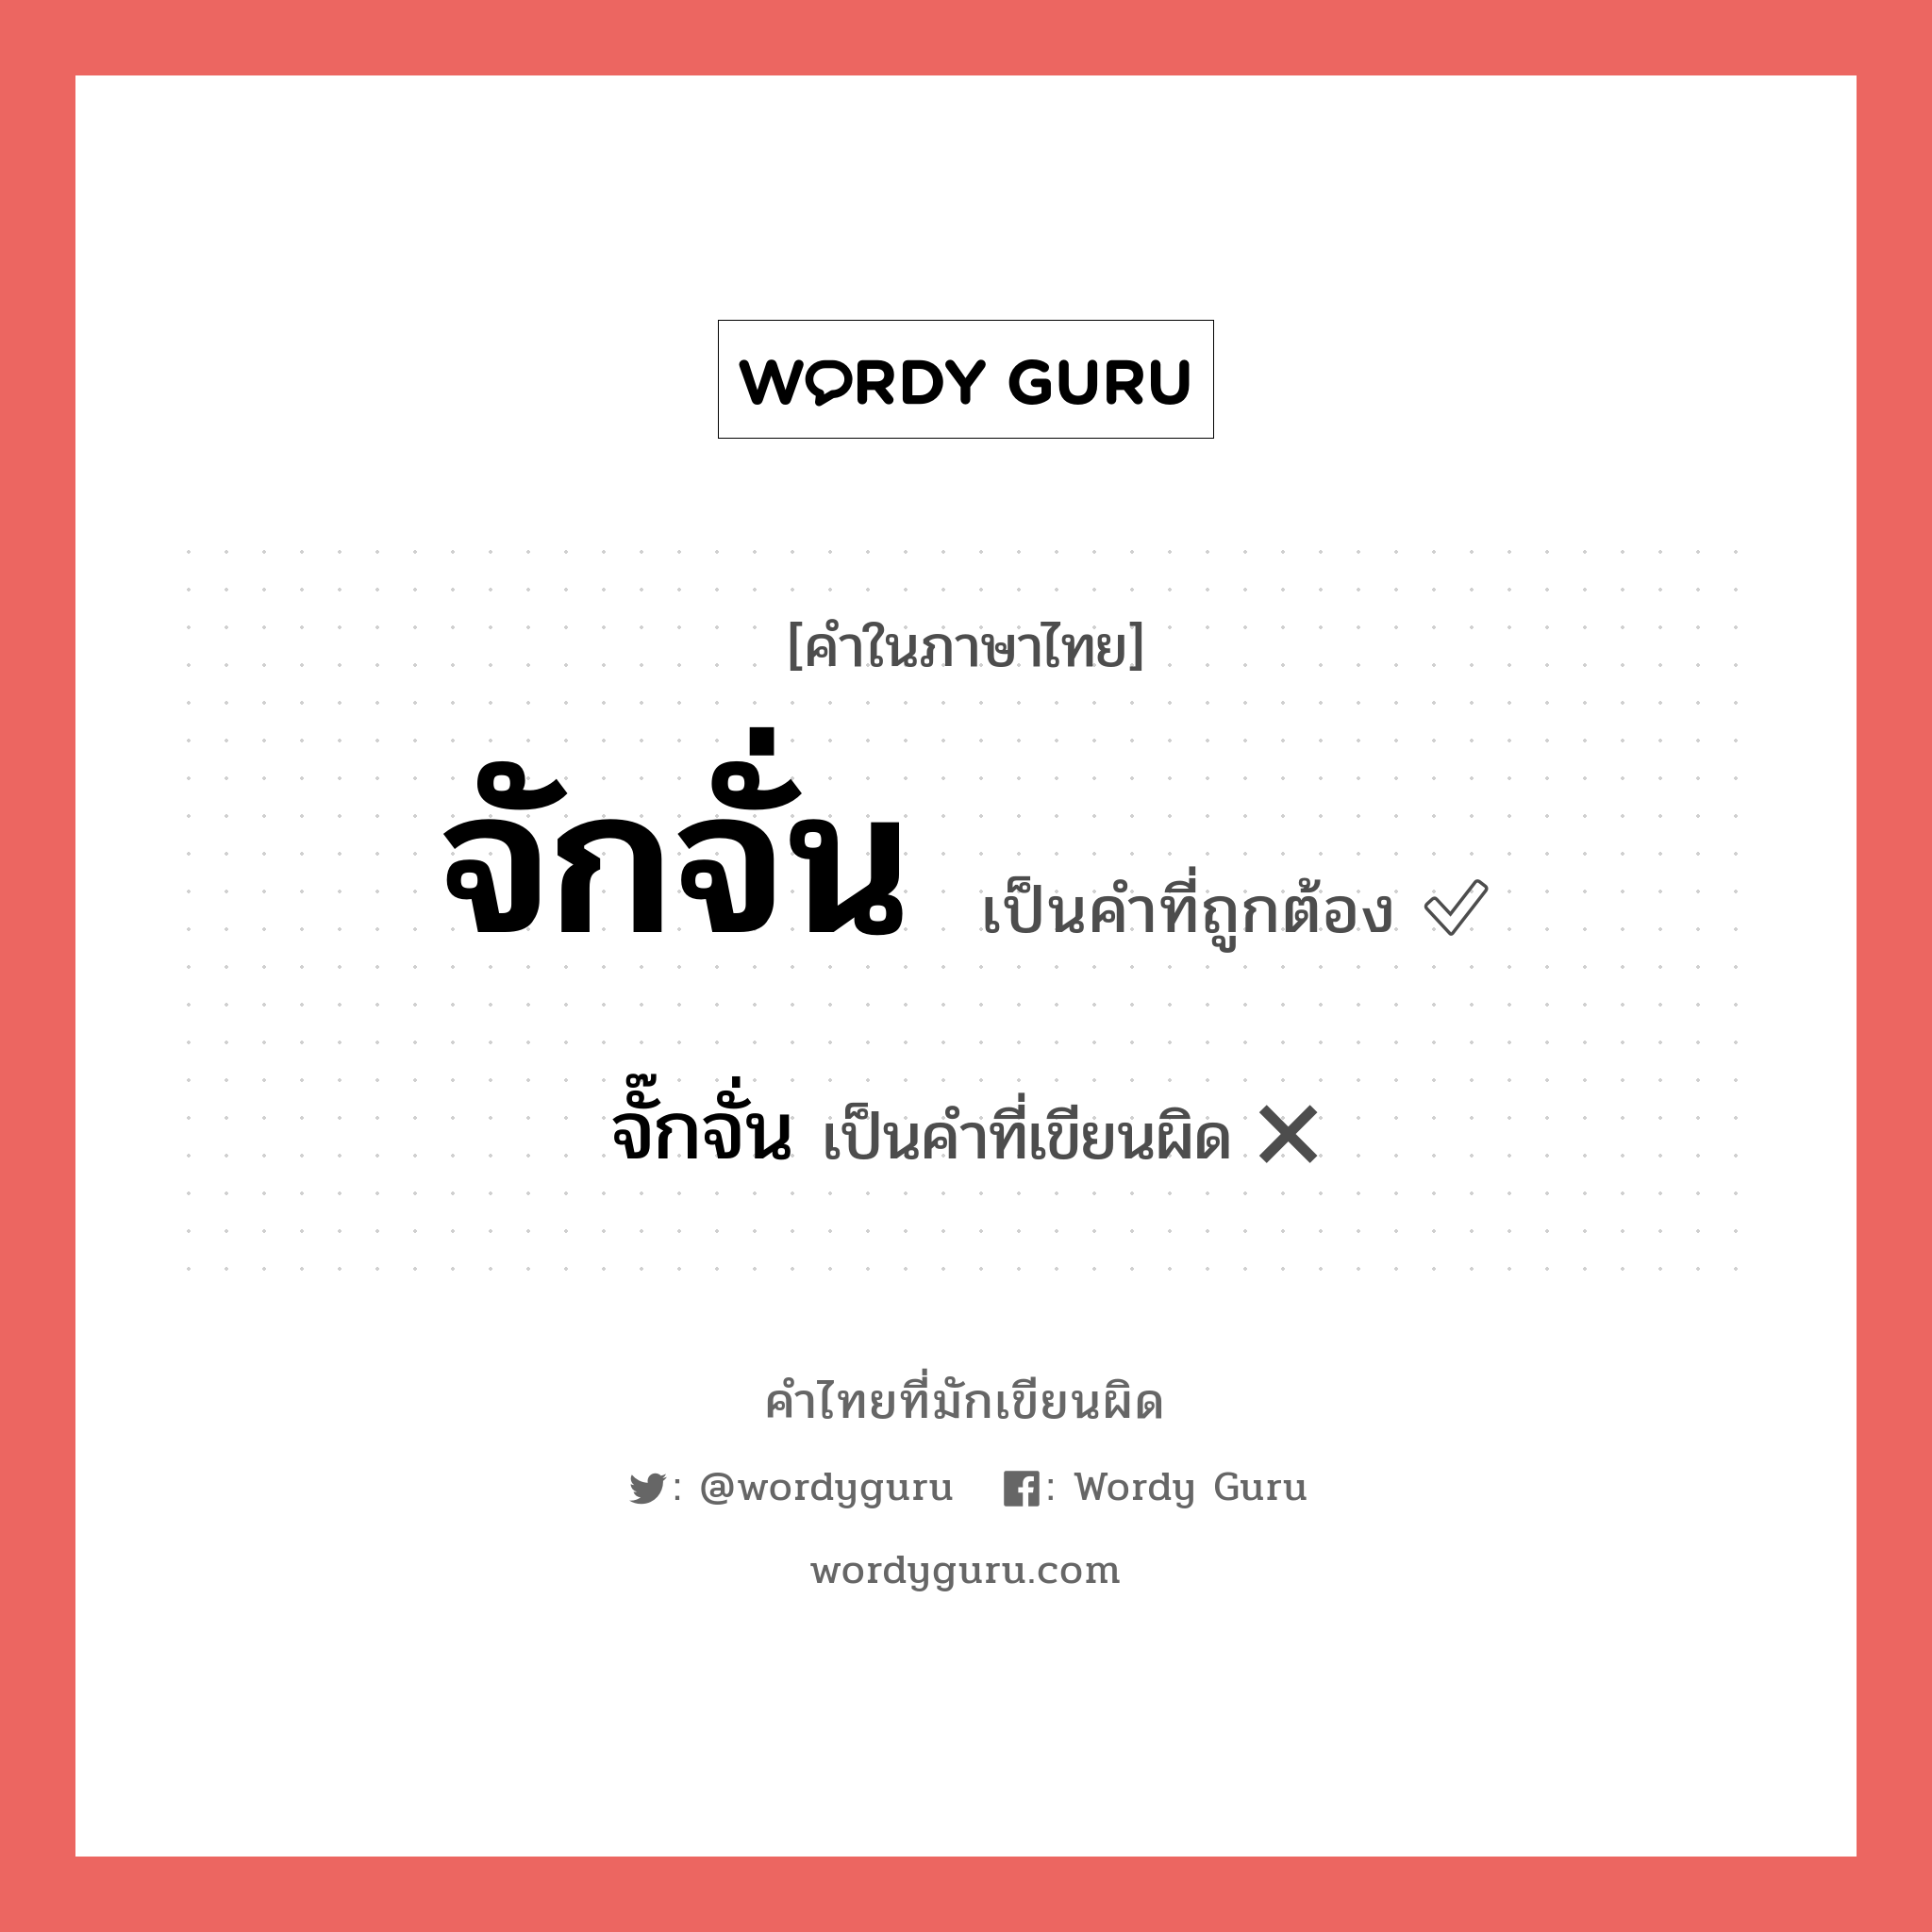 จั๊กจั่น หรือ จักจั่น คำไหนเขียนถูก?, คำในภาษาไทยที่มักเขียนผิด จั๊กจั่น คำที่ผิด ❌ จักจั่น